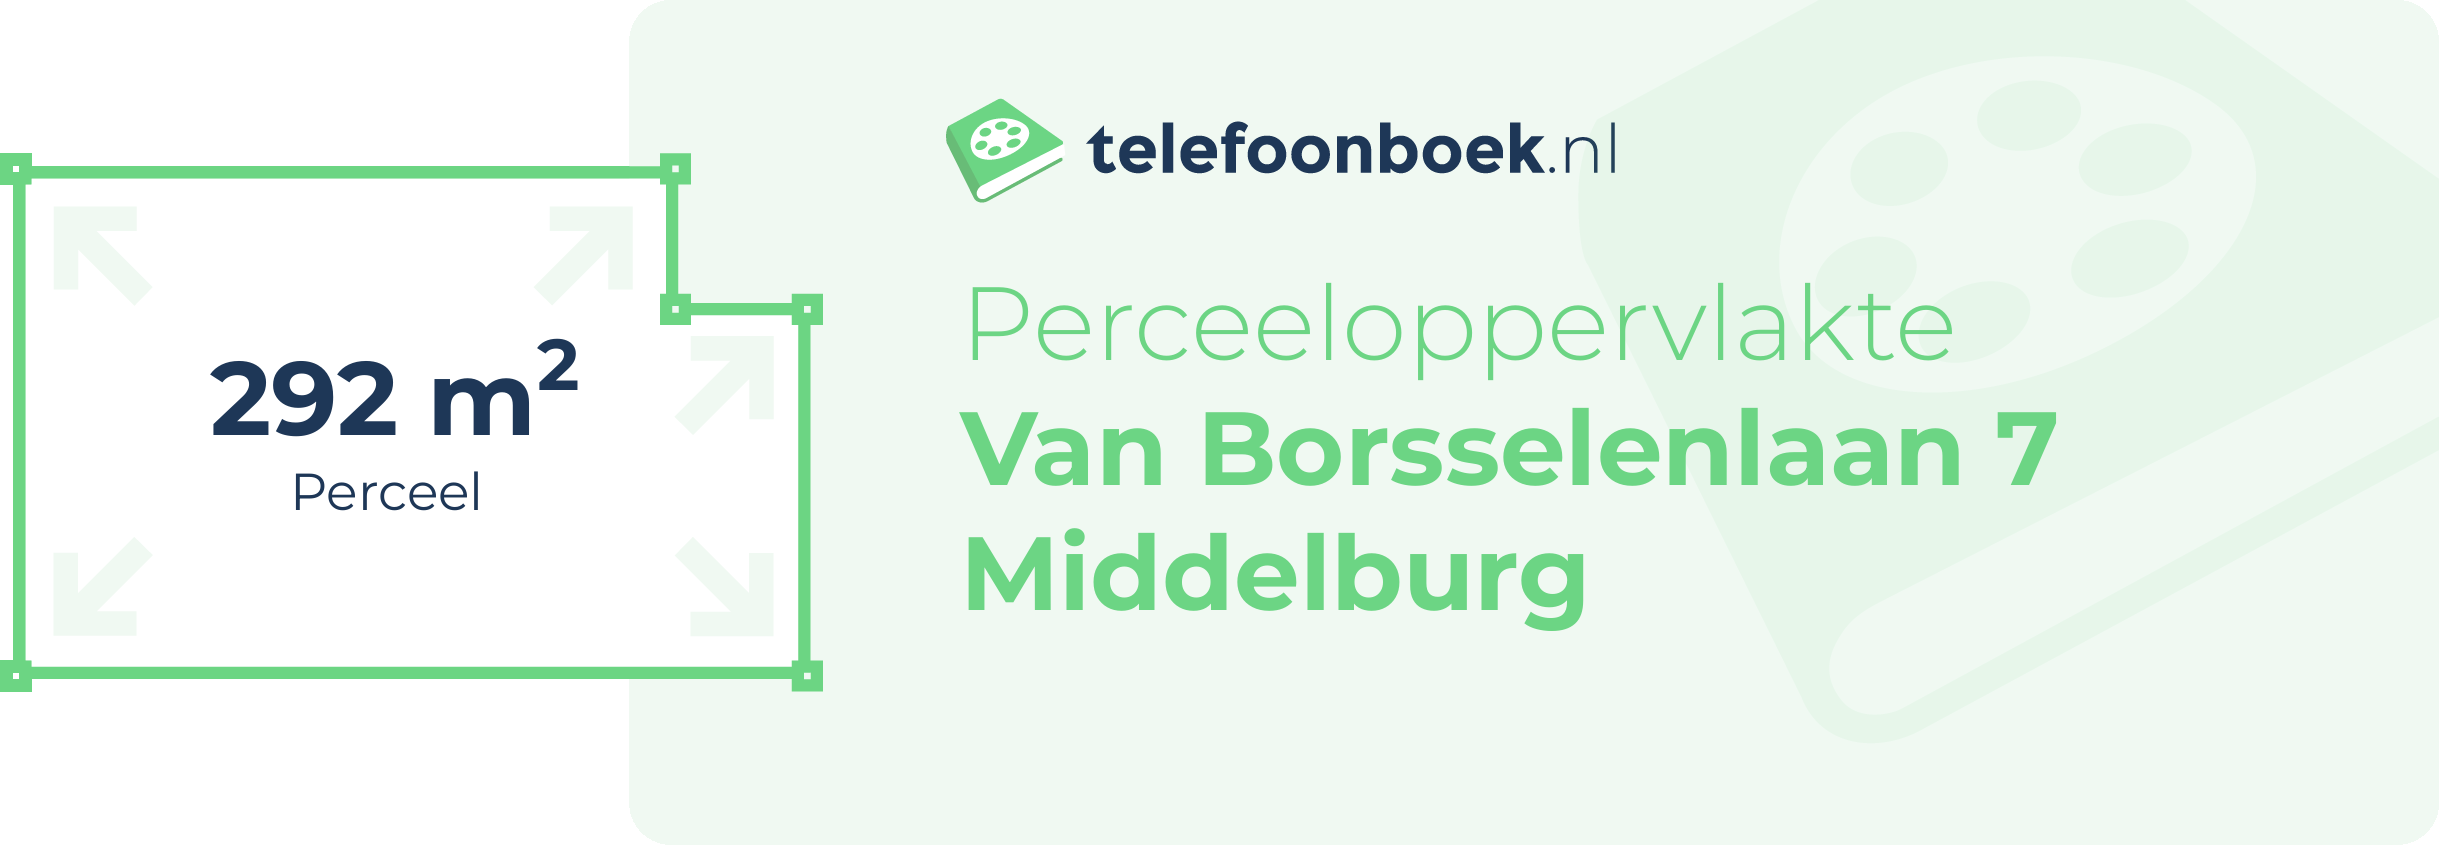 Perceeloppervlakte Van Borsselenlaan 7 Middelburg